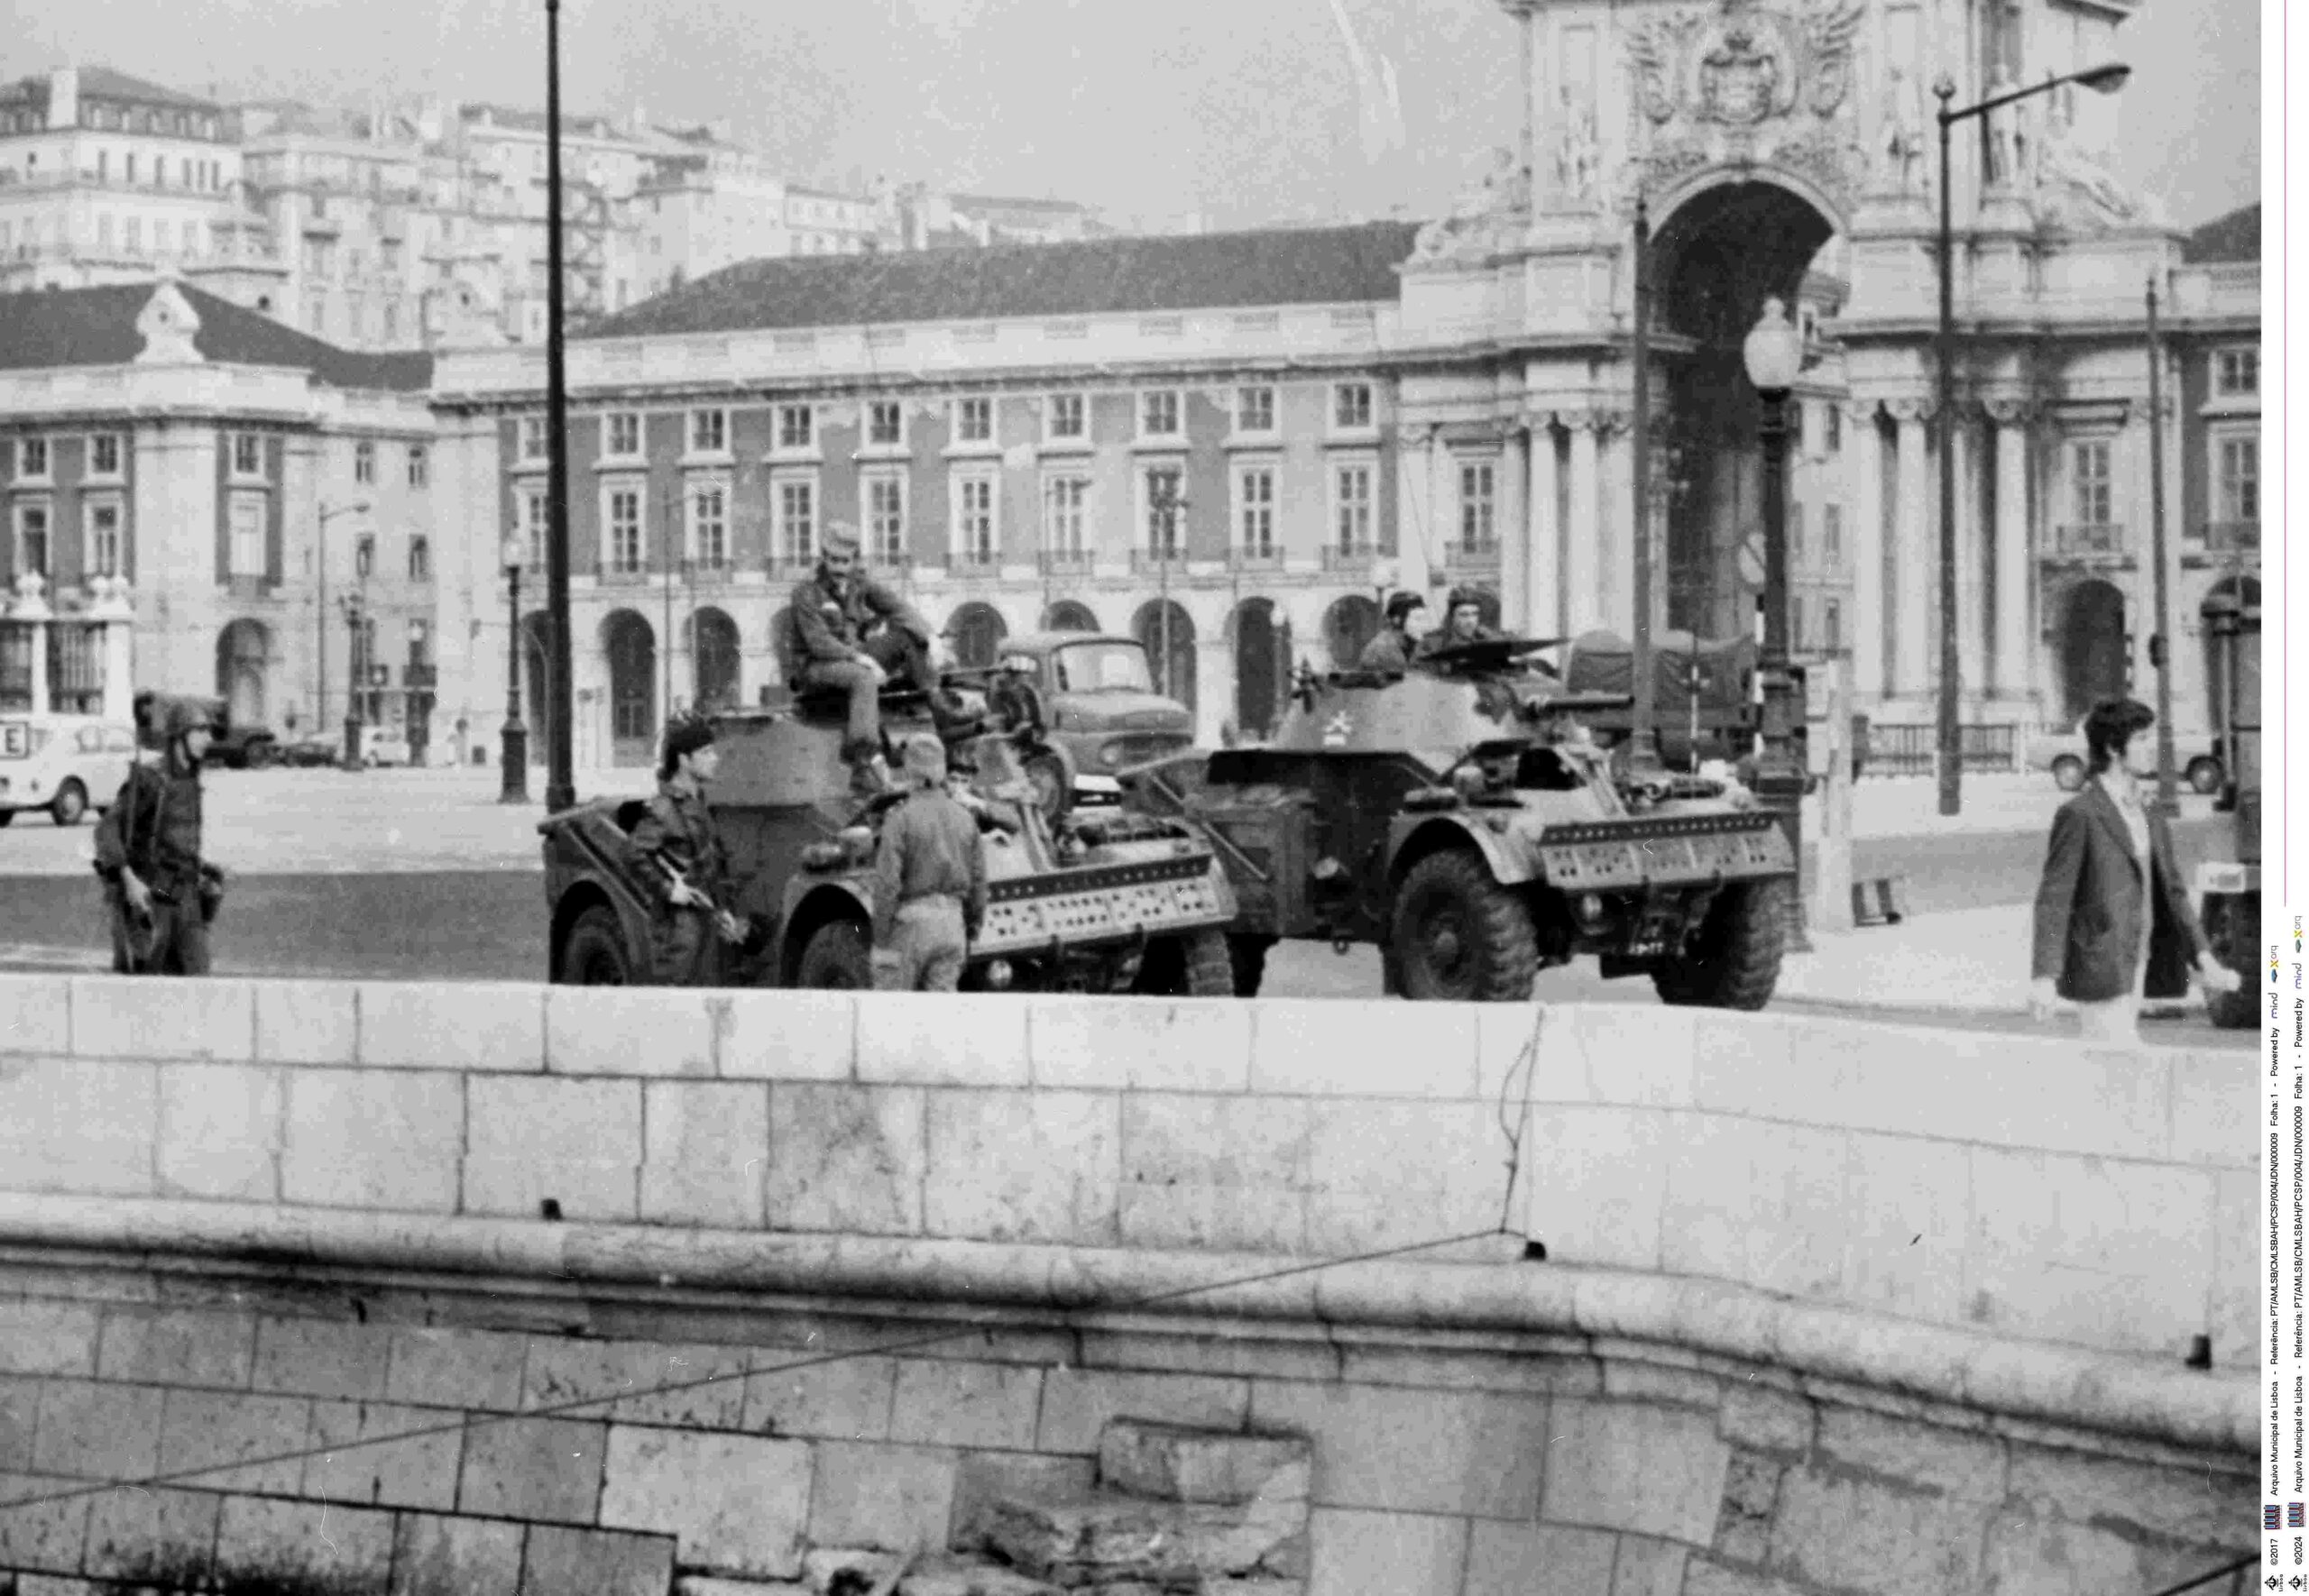 Militär auf der Praca do Comercio am 25. April 1974 in Lissabon (Nelkenrevolution)